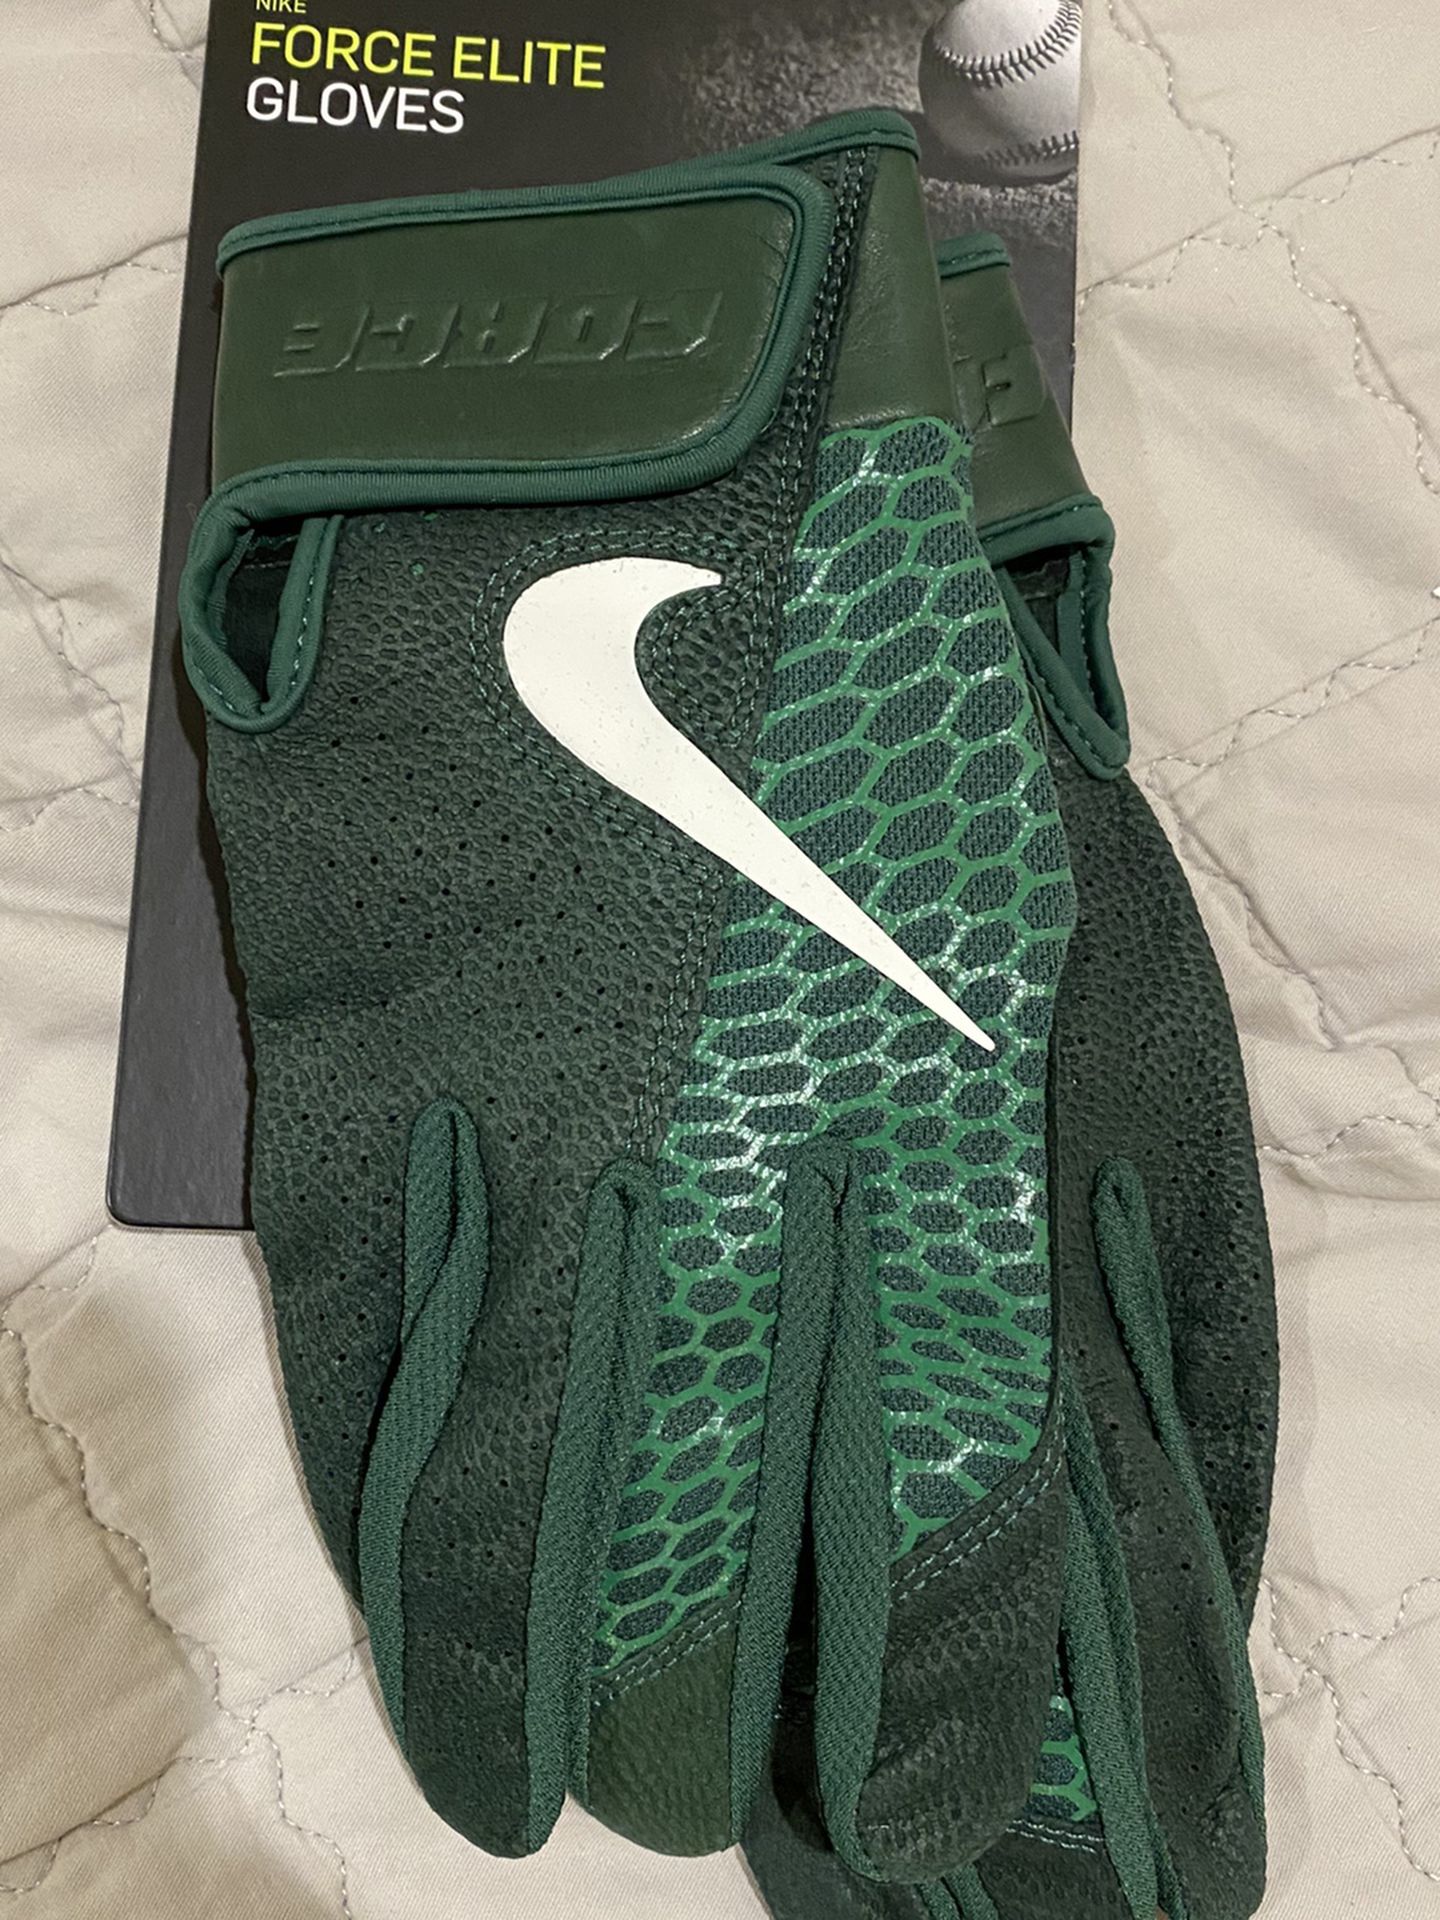 Nike Force Elite Batting Gloves Size Medium